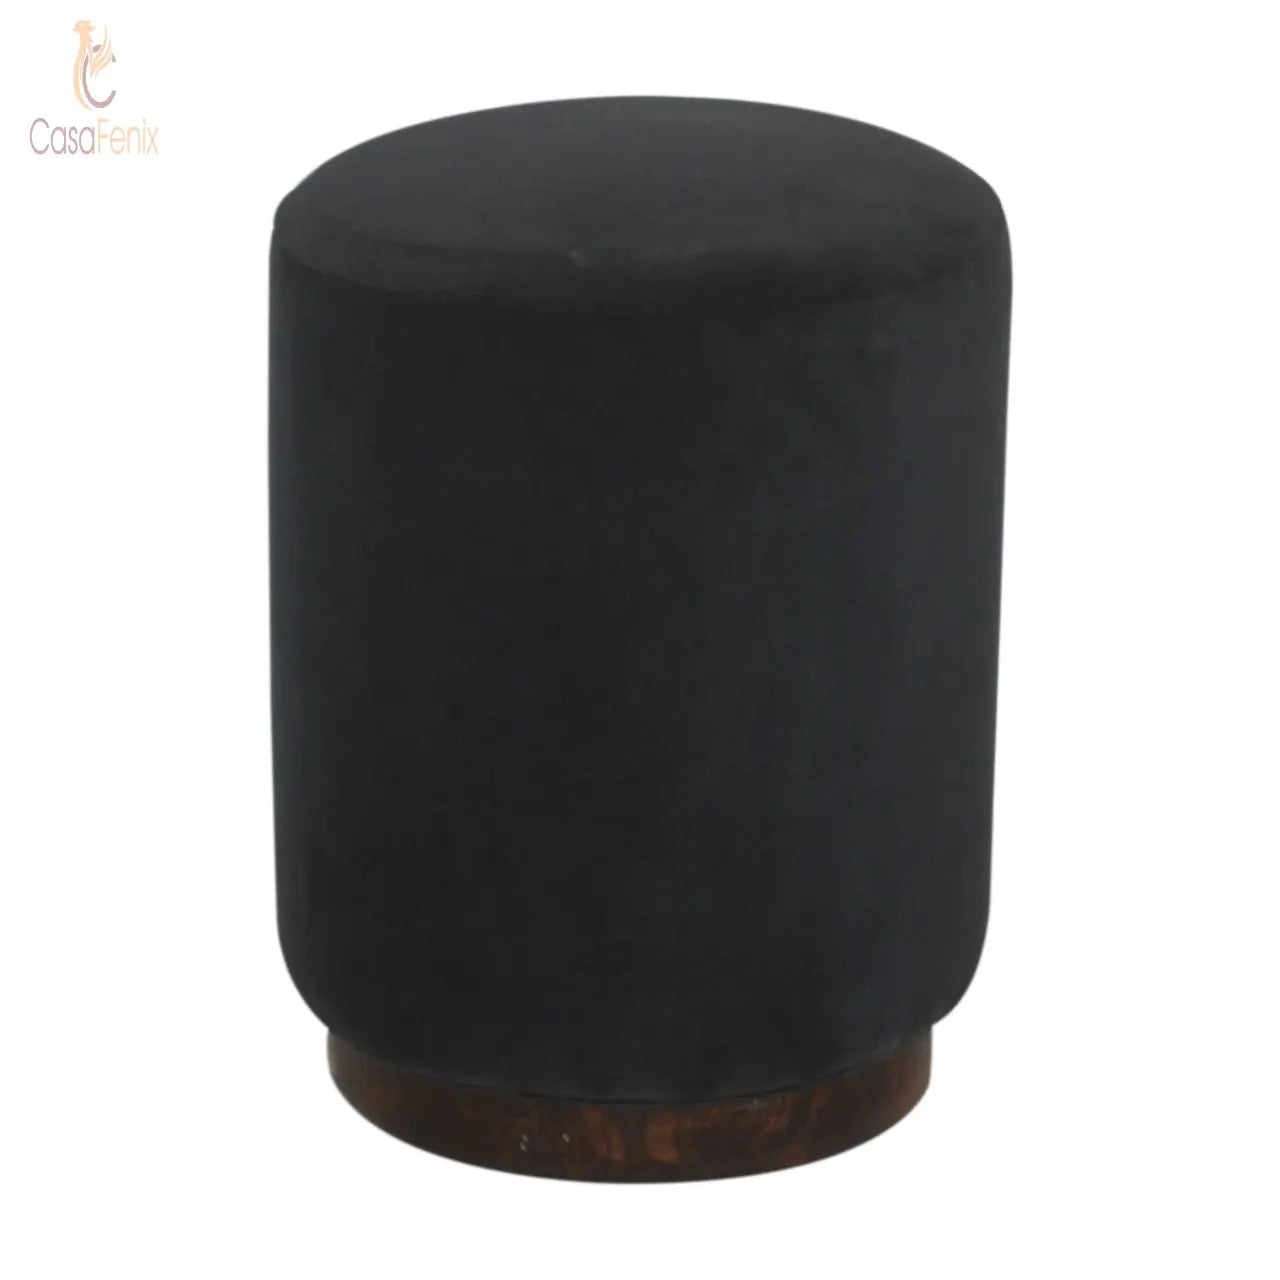 Black Velvet Upholstered Footstool with Wooden Base - CasaFenix